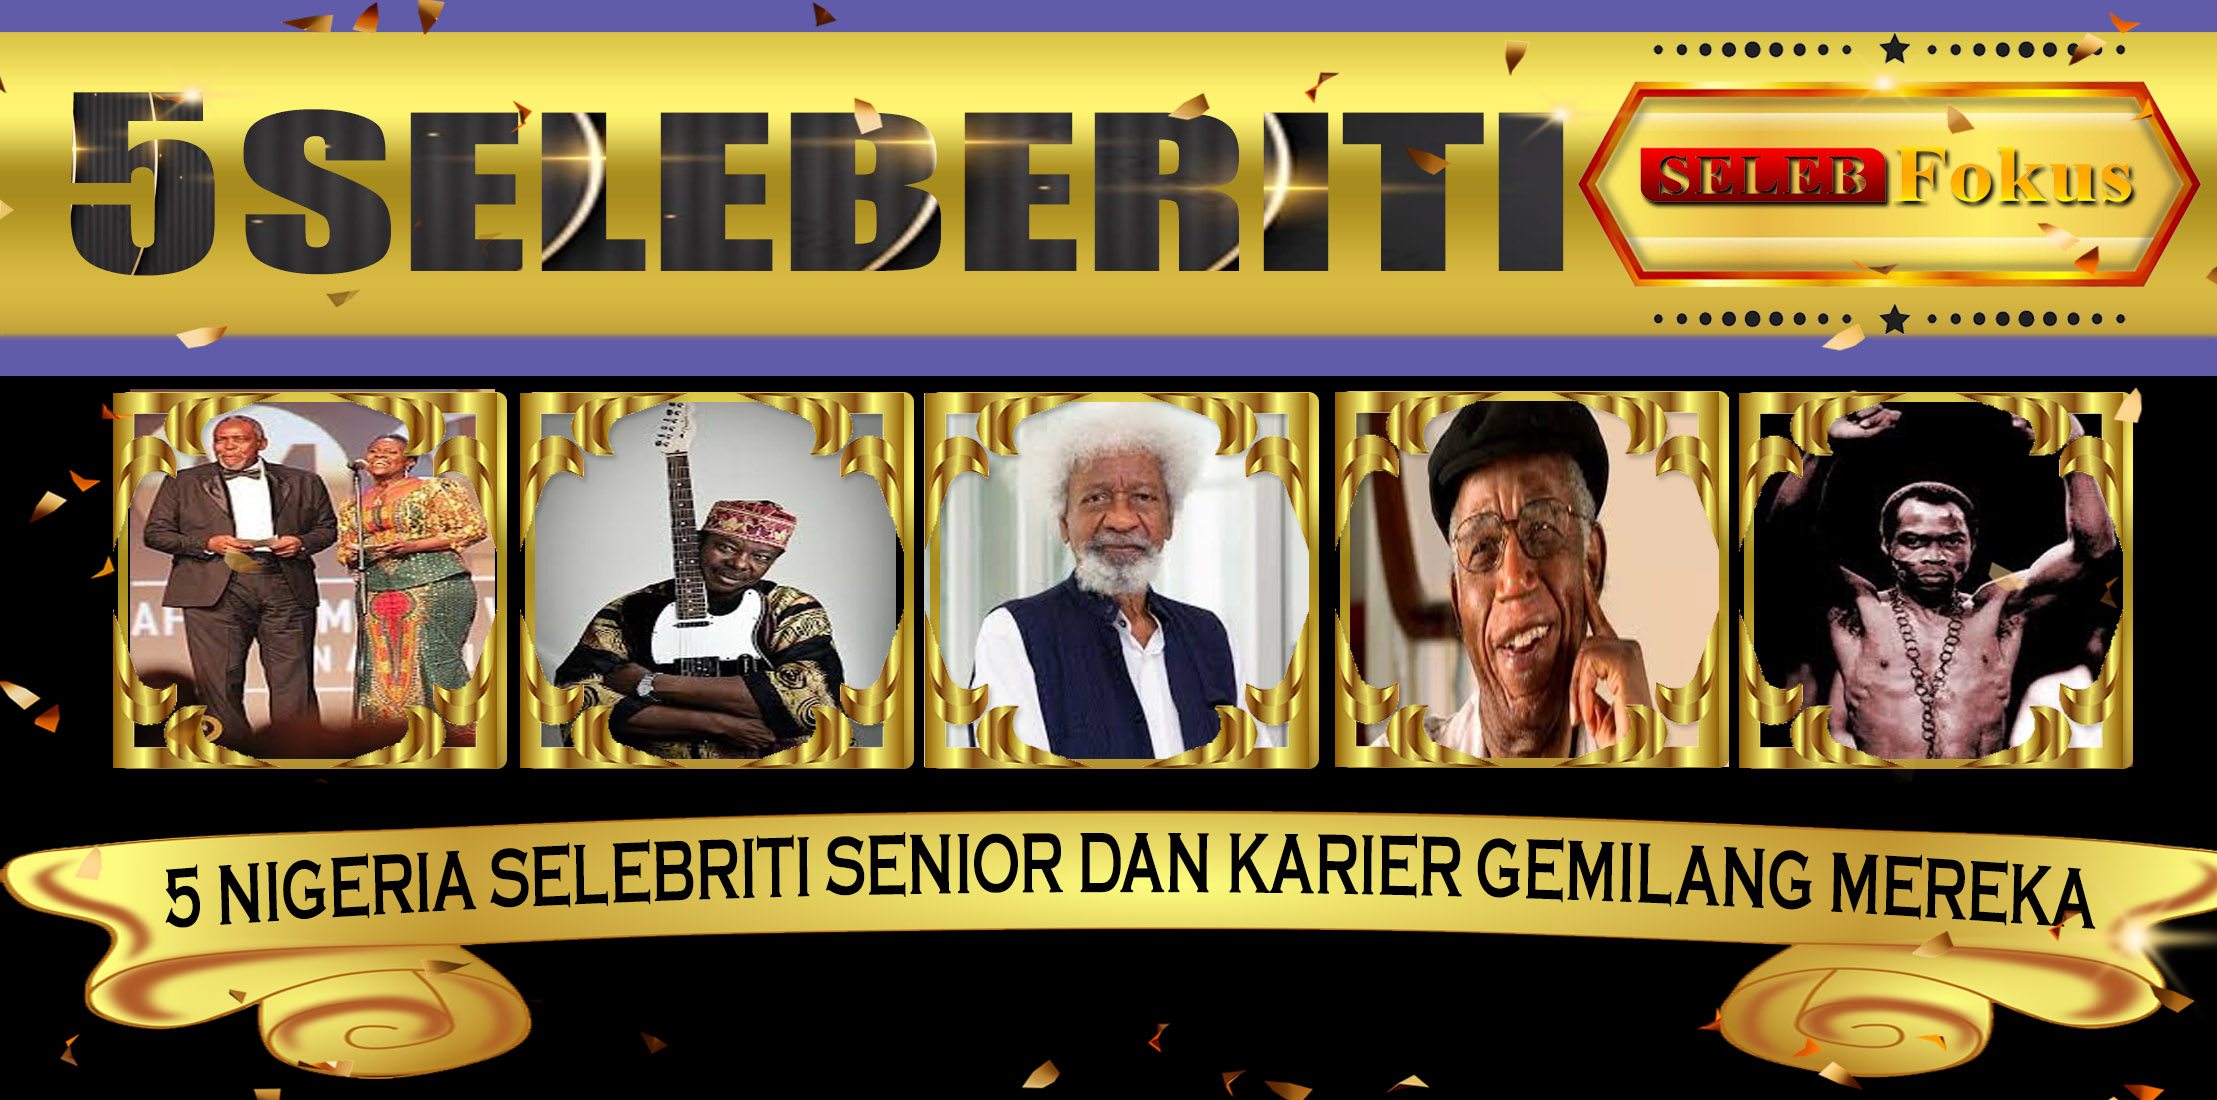 5 Nigeria Selebriti Senior dan Karier Gemilang Mereka